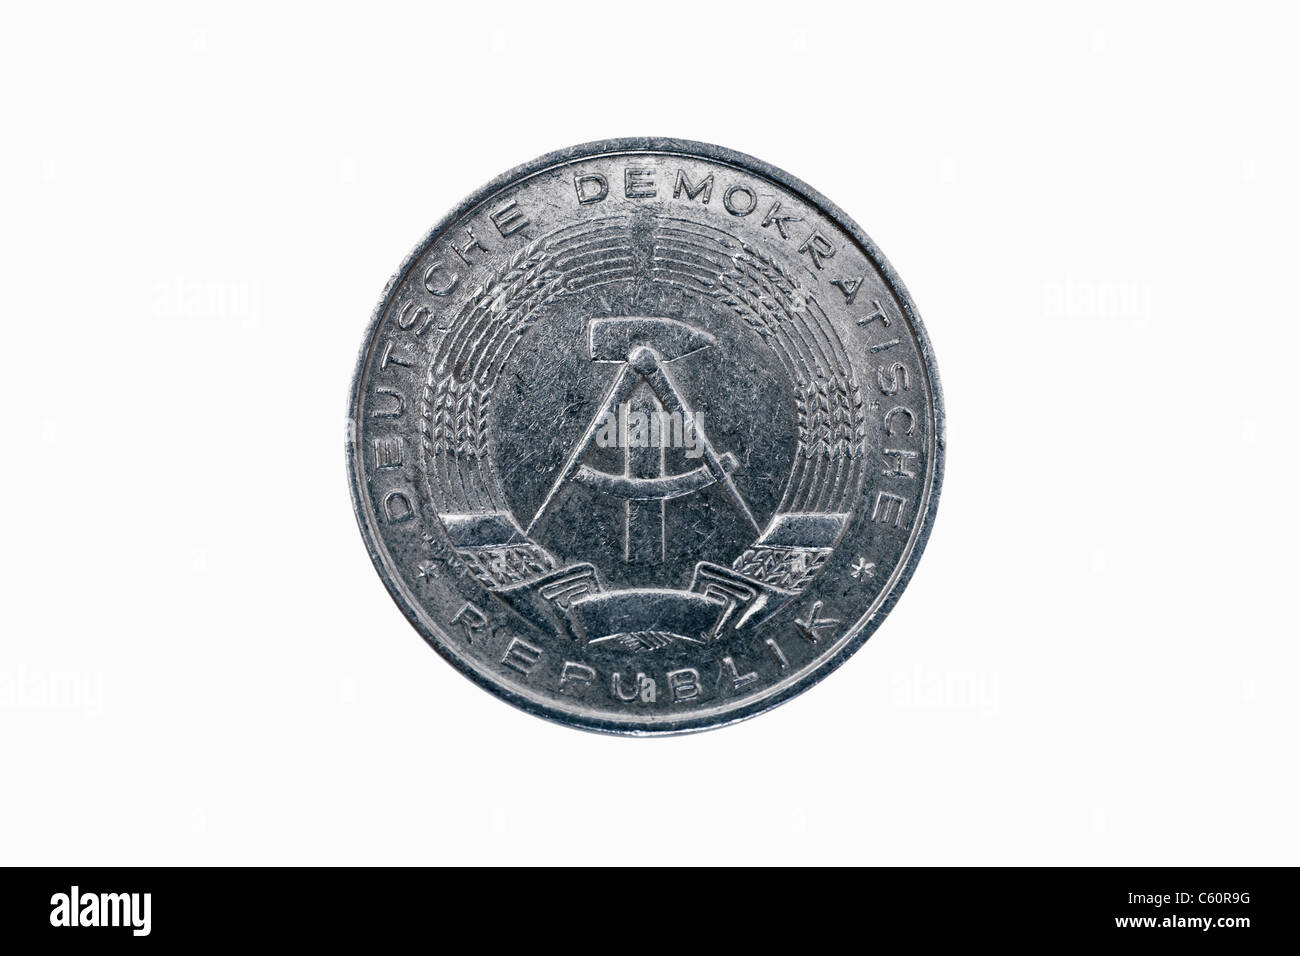 Detailansicht einer 10 Pfennig Münze aus der DDR aus dem Jahr 1981 | Detail photo of a 10 Pfennig coin of GDR from the year 1981 Stock Photo